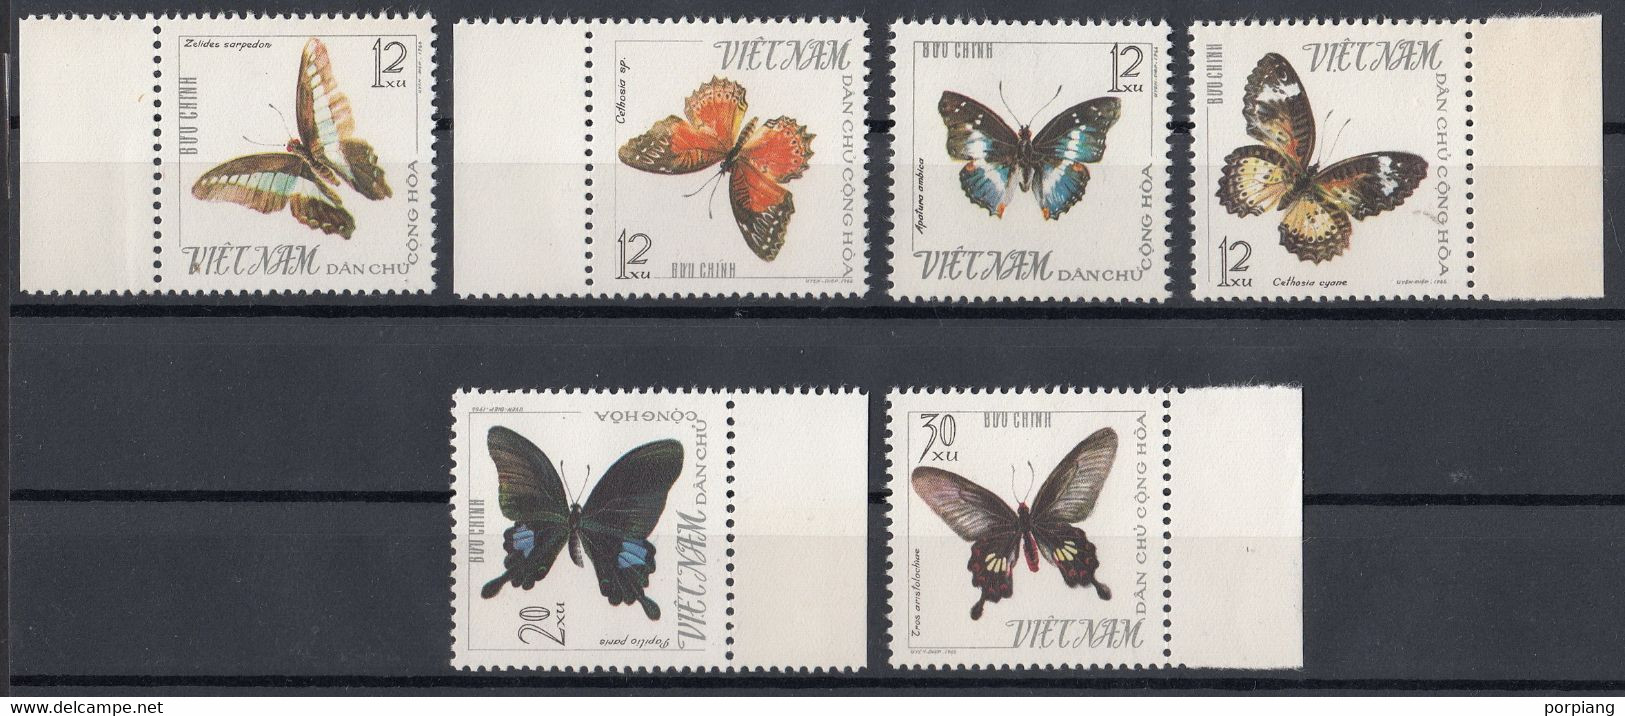 Vietnam 1965 Mi 405 – 410 Butterfly Series MNH - Vietnam